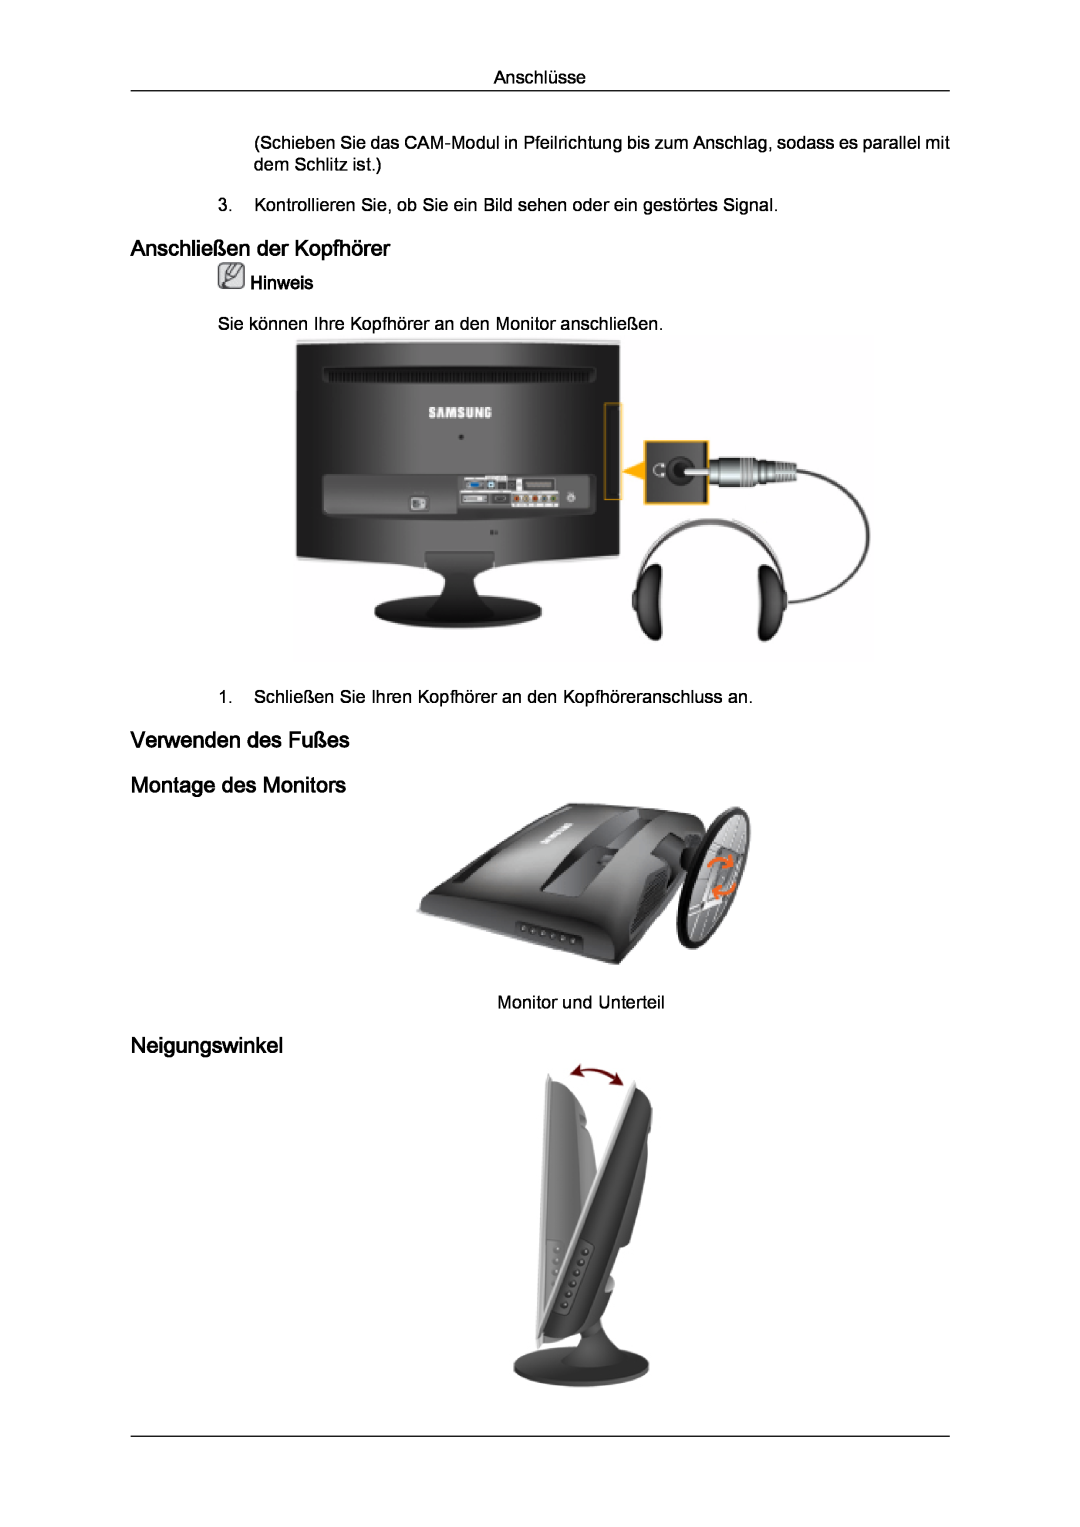 Samsung LS22TDVSUV/EN manual Anschließen der Kopfhörer, Verwenden des Fußes Montage des Monitors, Neigungswinkel, Hinweis 